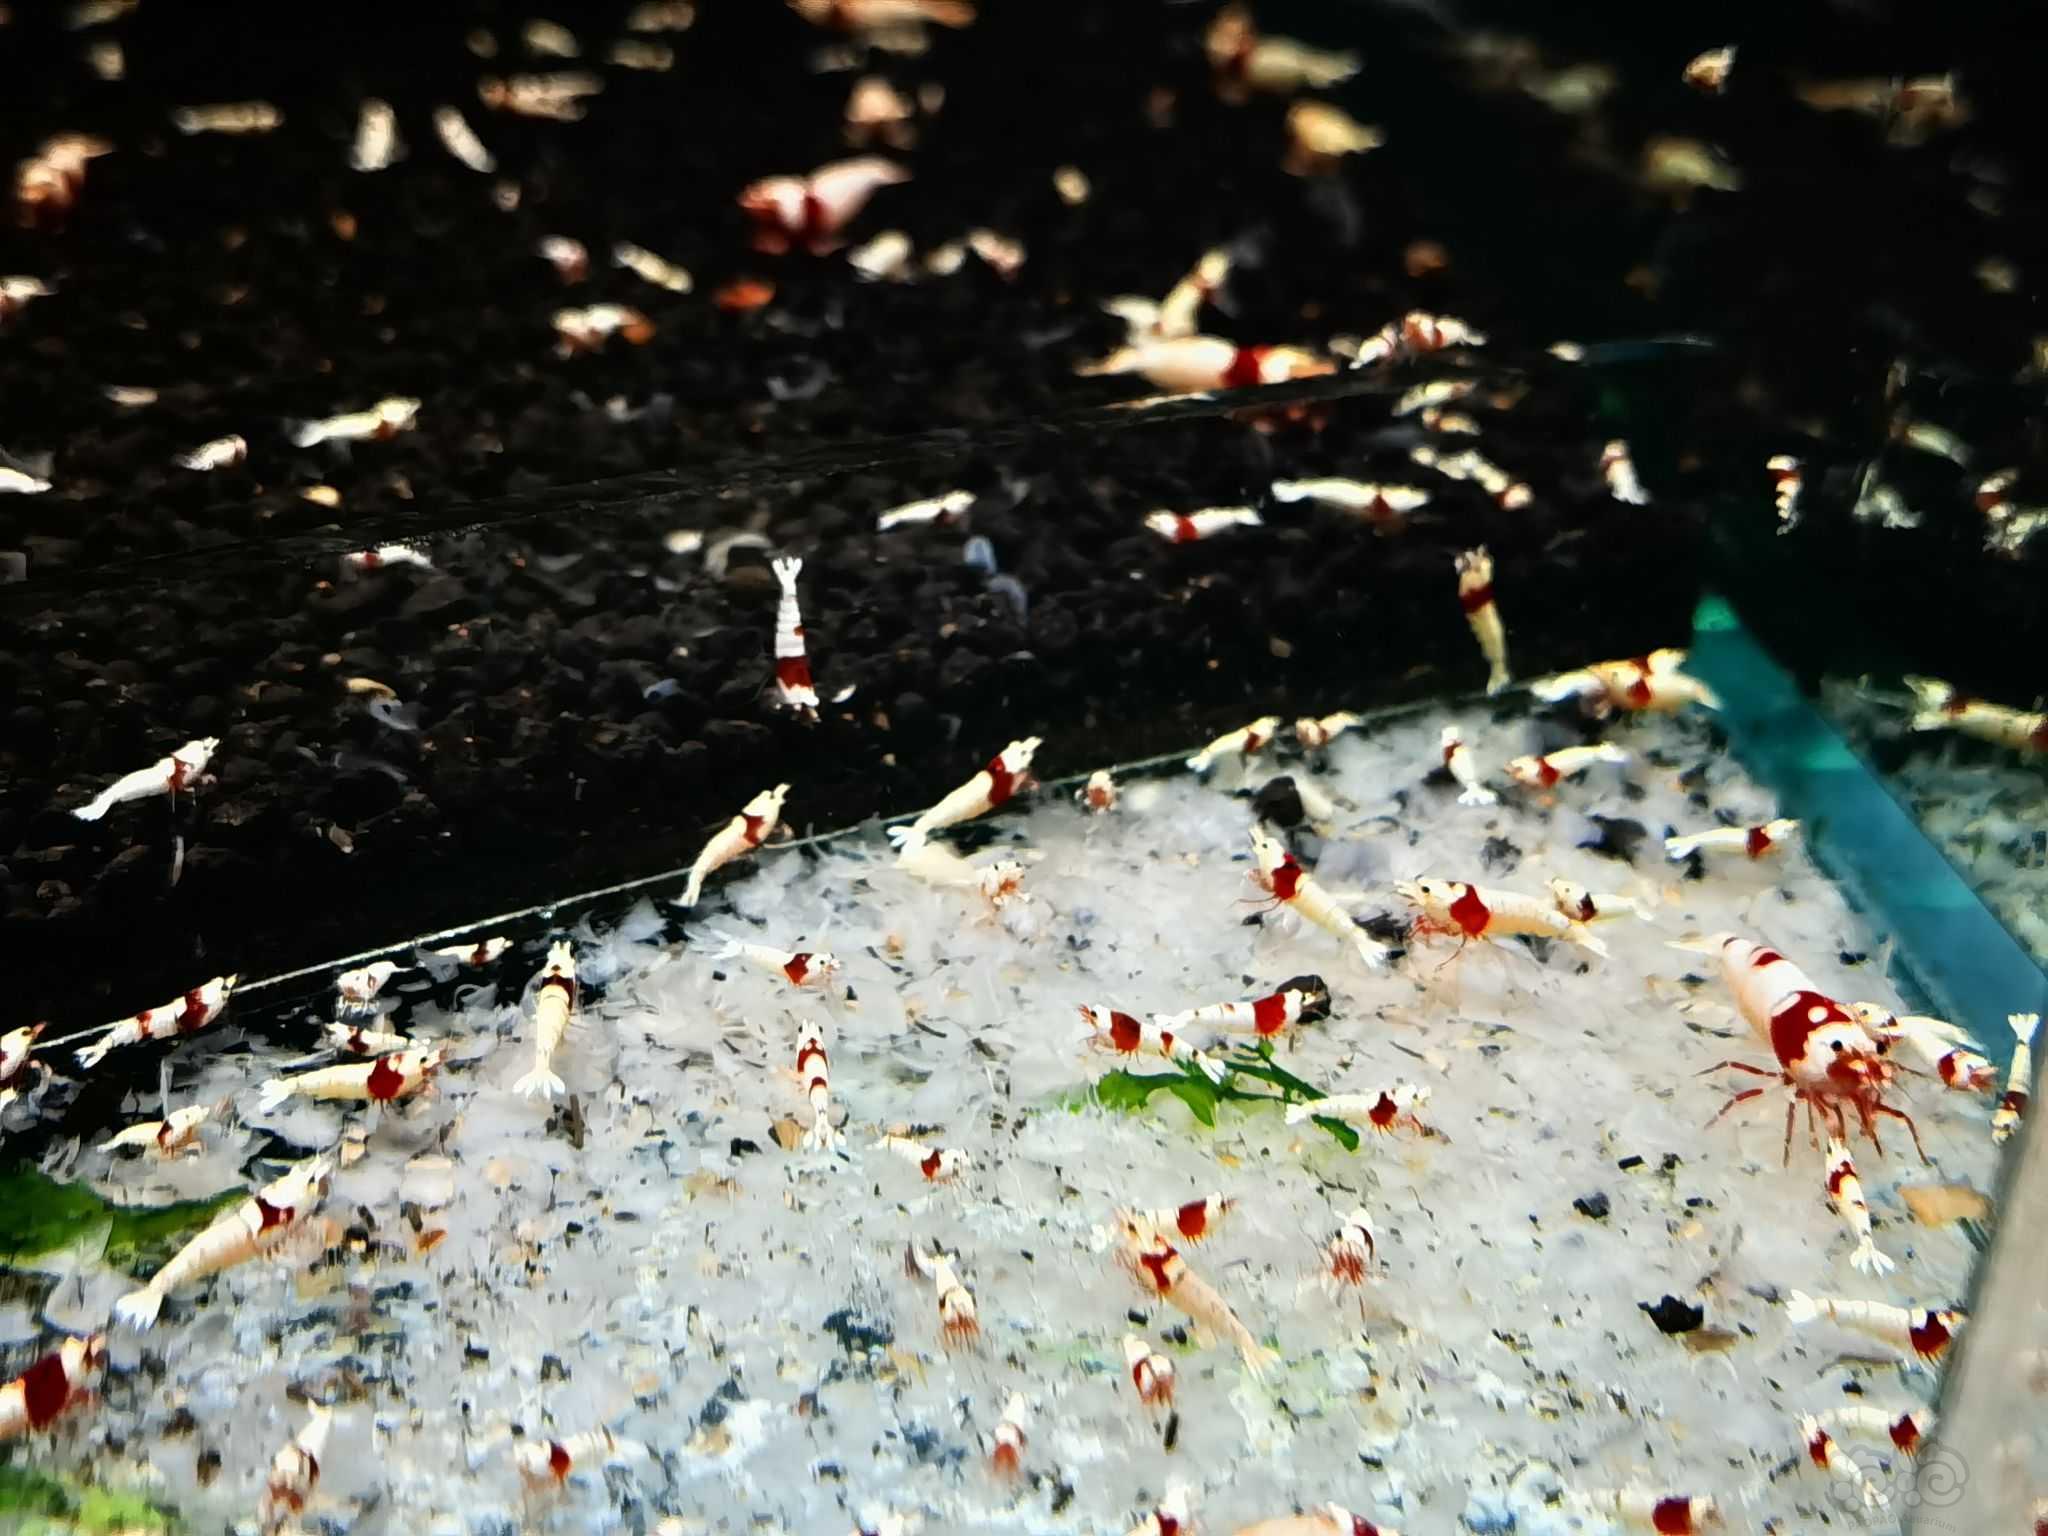 【水晶虾】出纯血红白5百只-图5